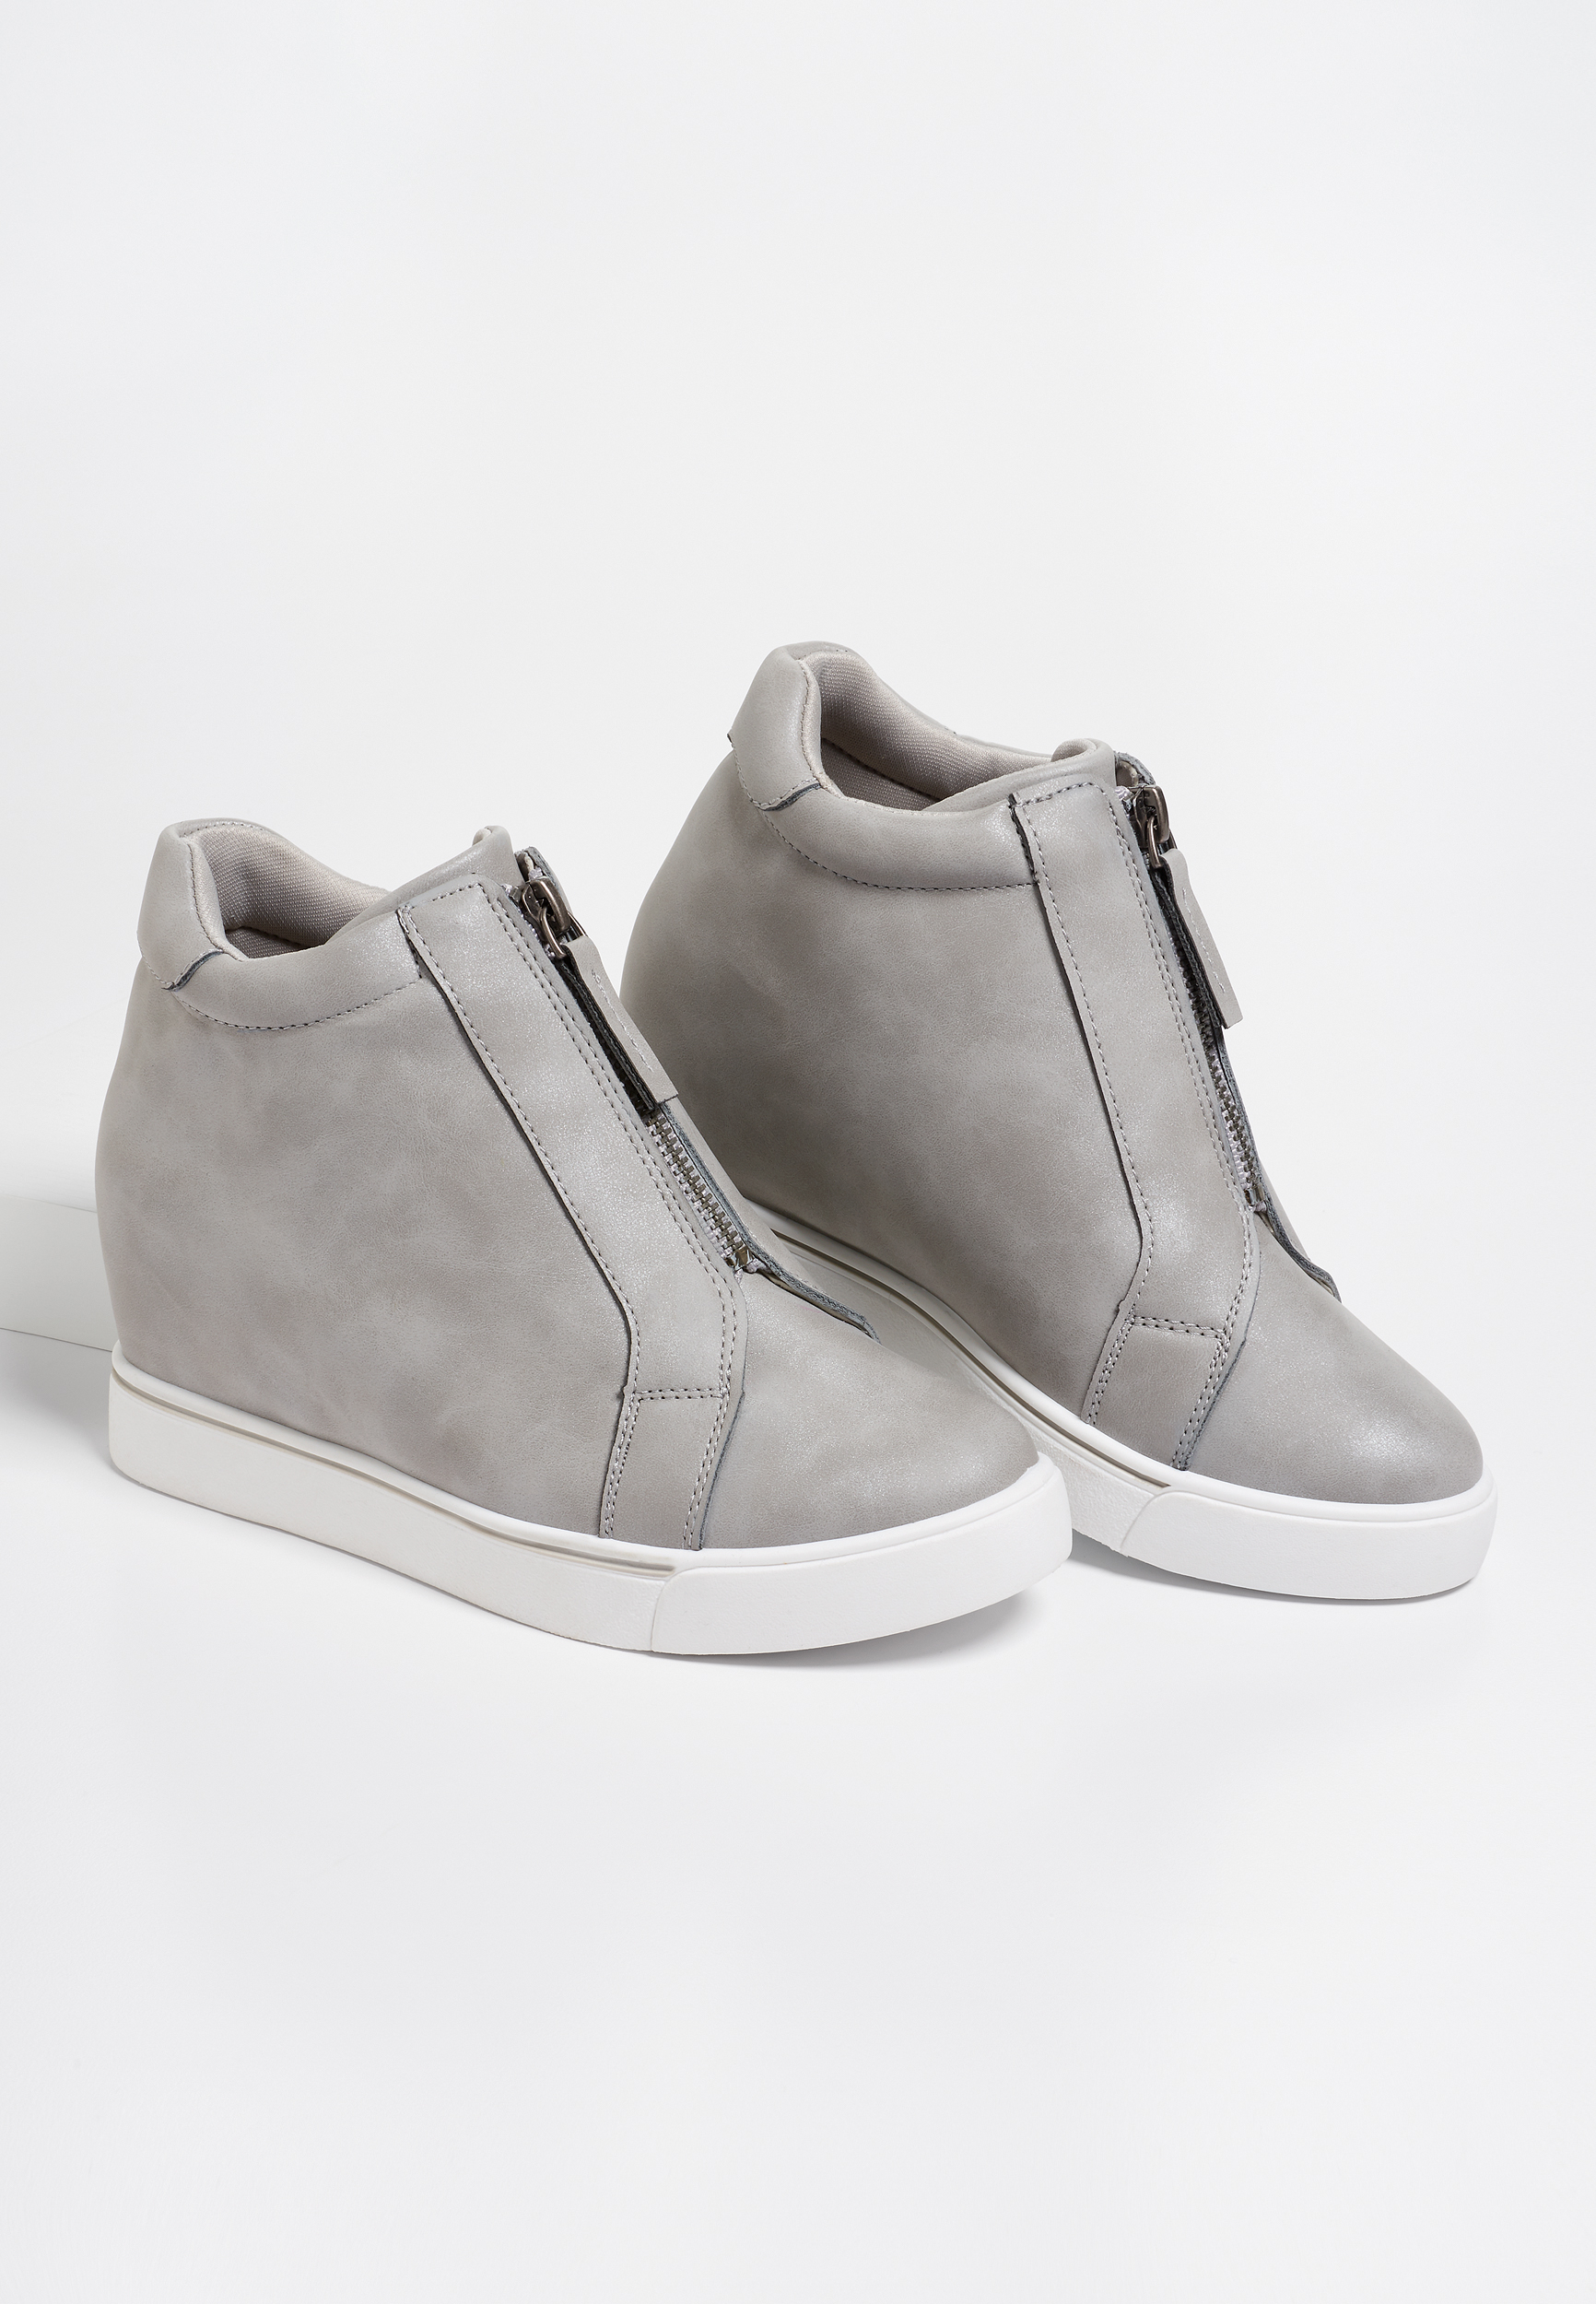 gray sneaker wedges